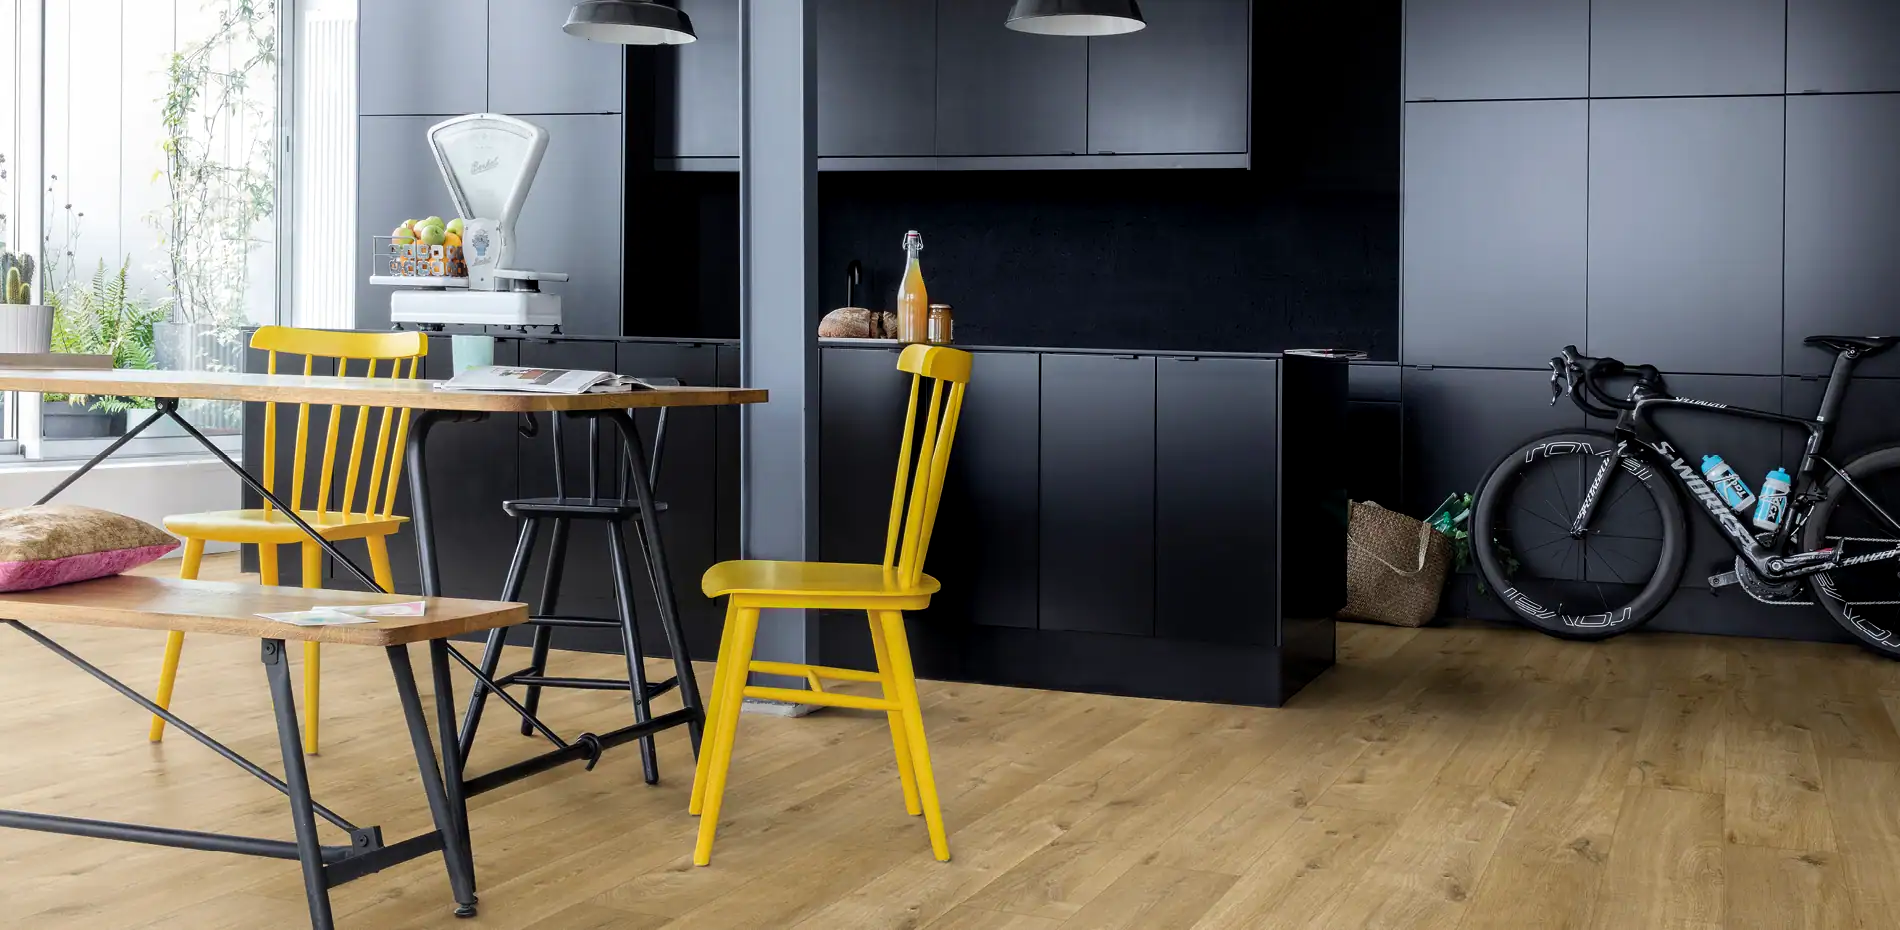 Colour and design matt black kitchen